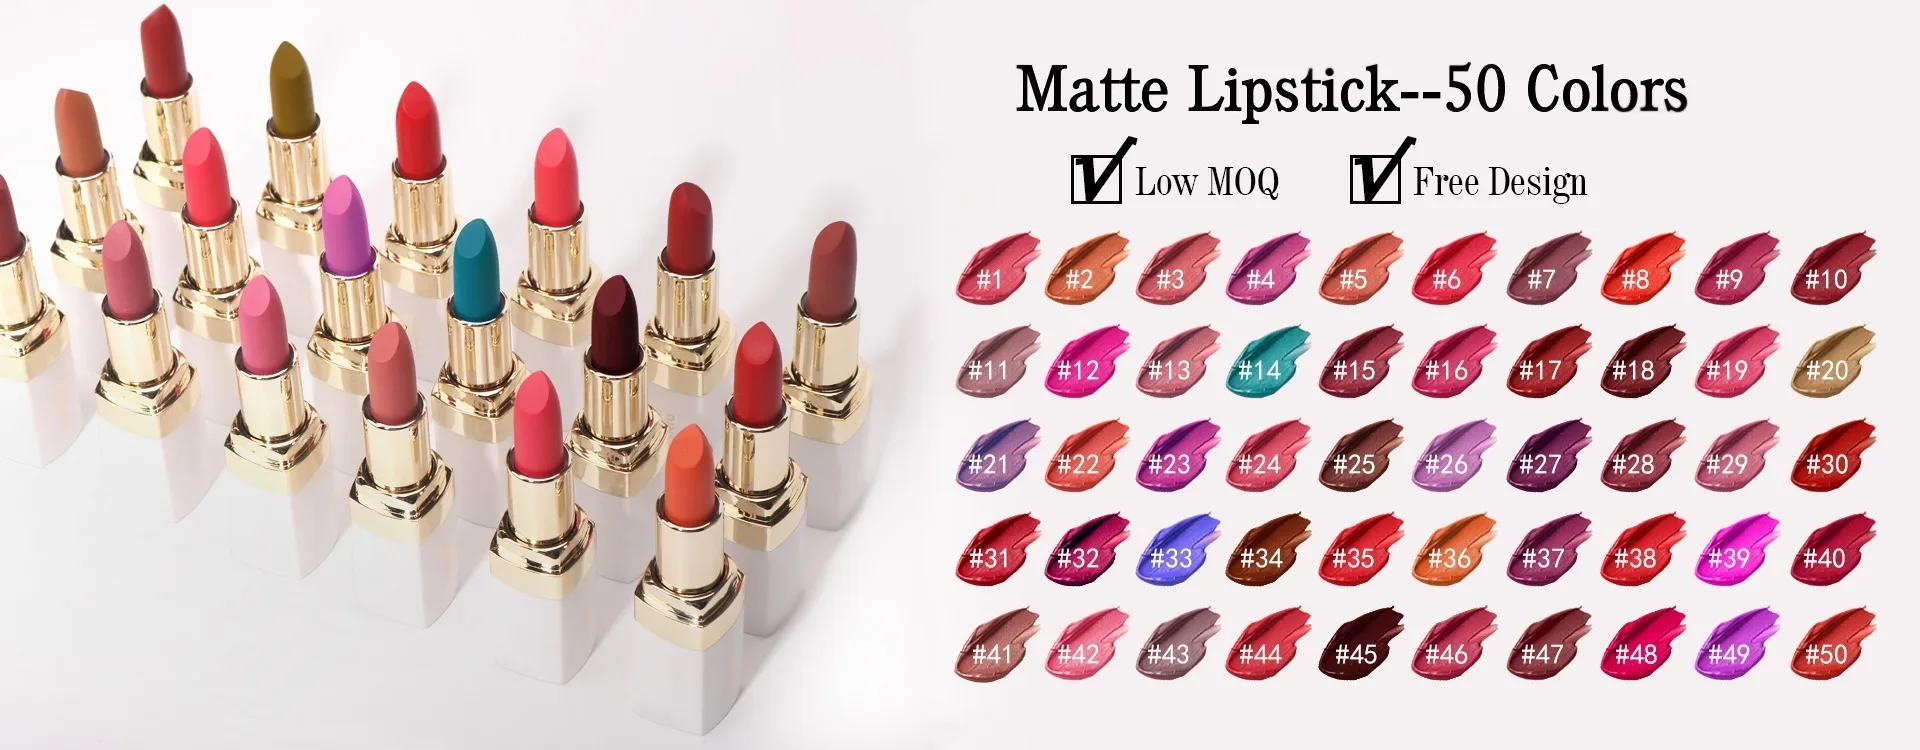 Matte Lipstick Private Label